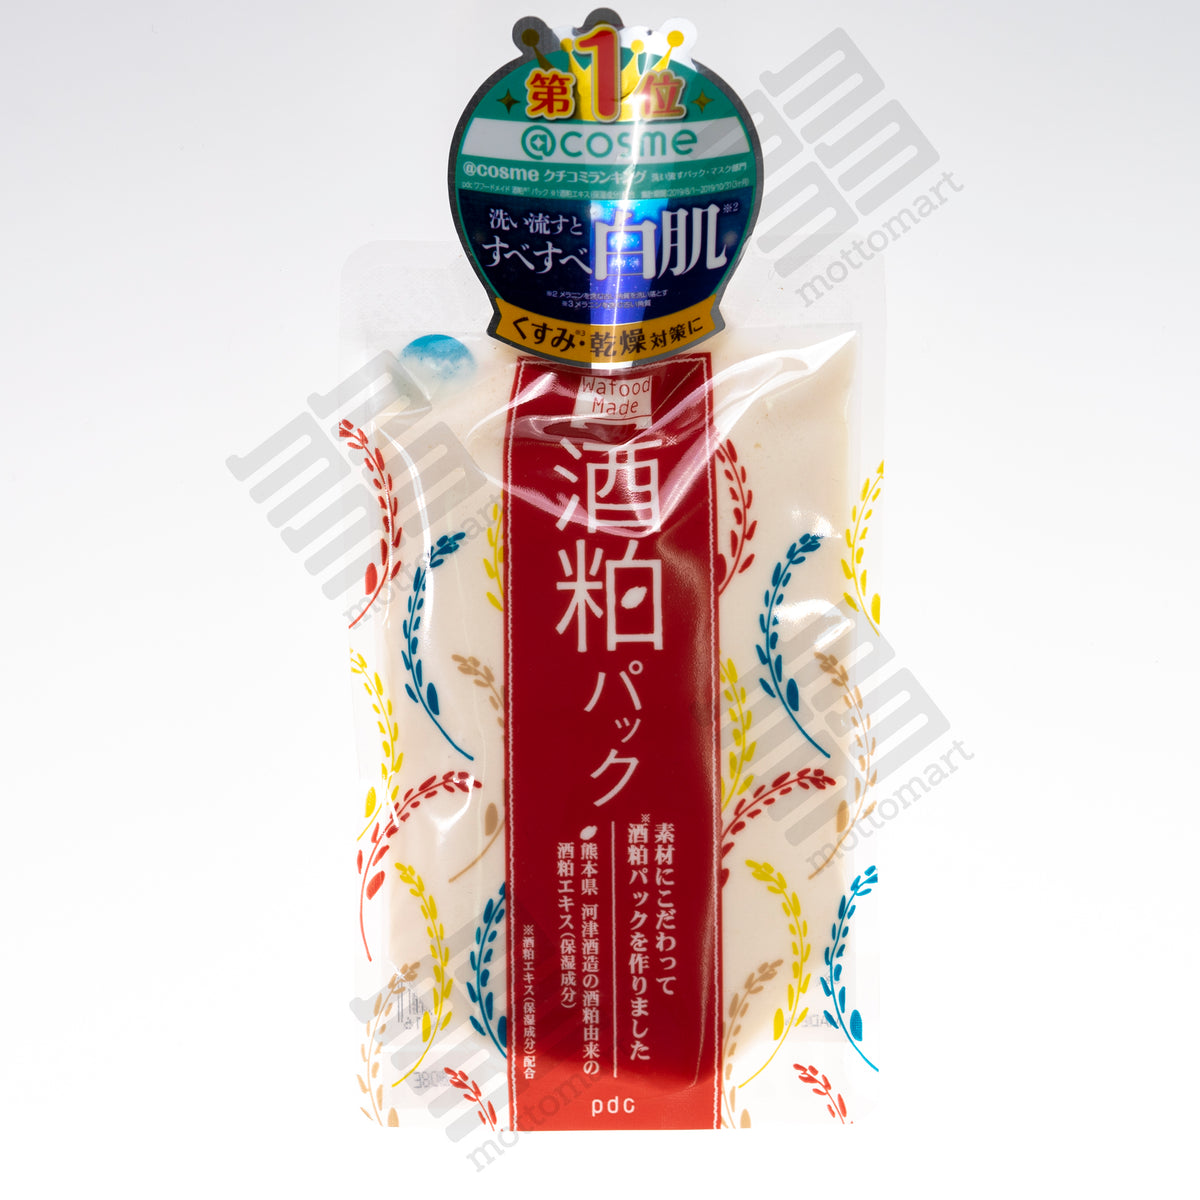 PDC Wafood Made - Sake Kasu Face Pack (170g) ワフードメイド 酒粕